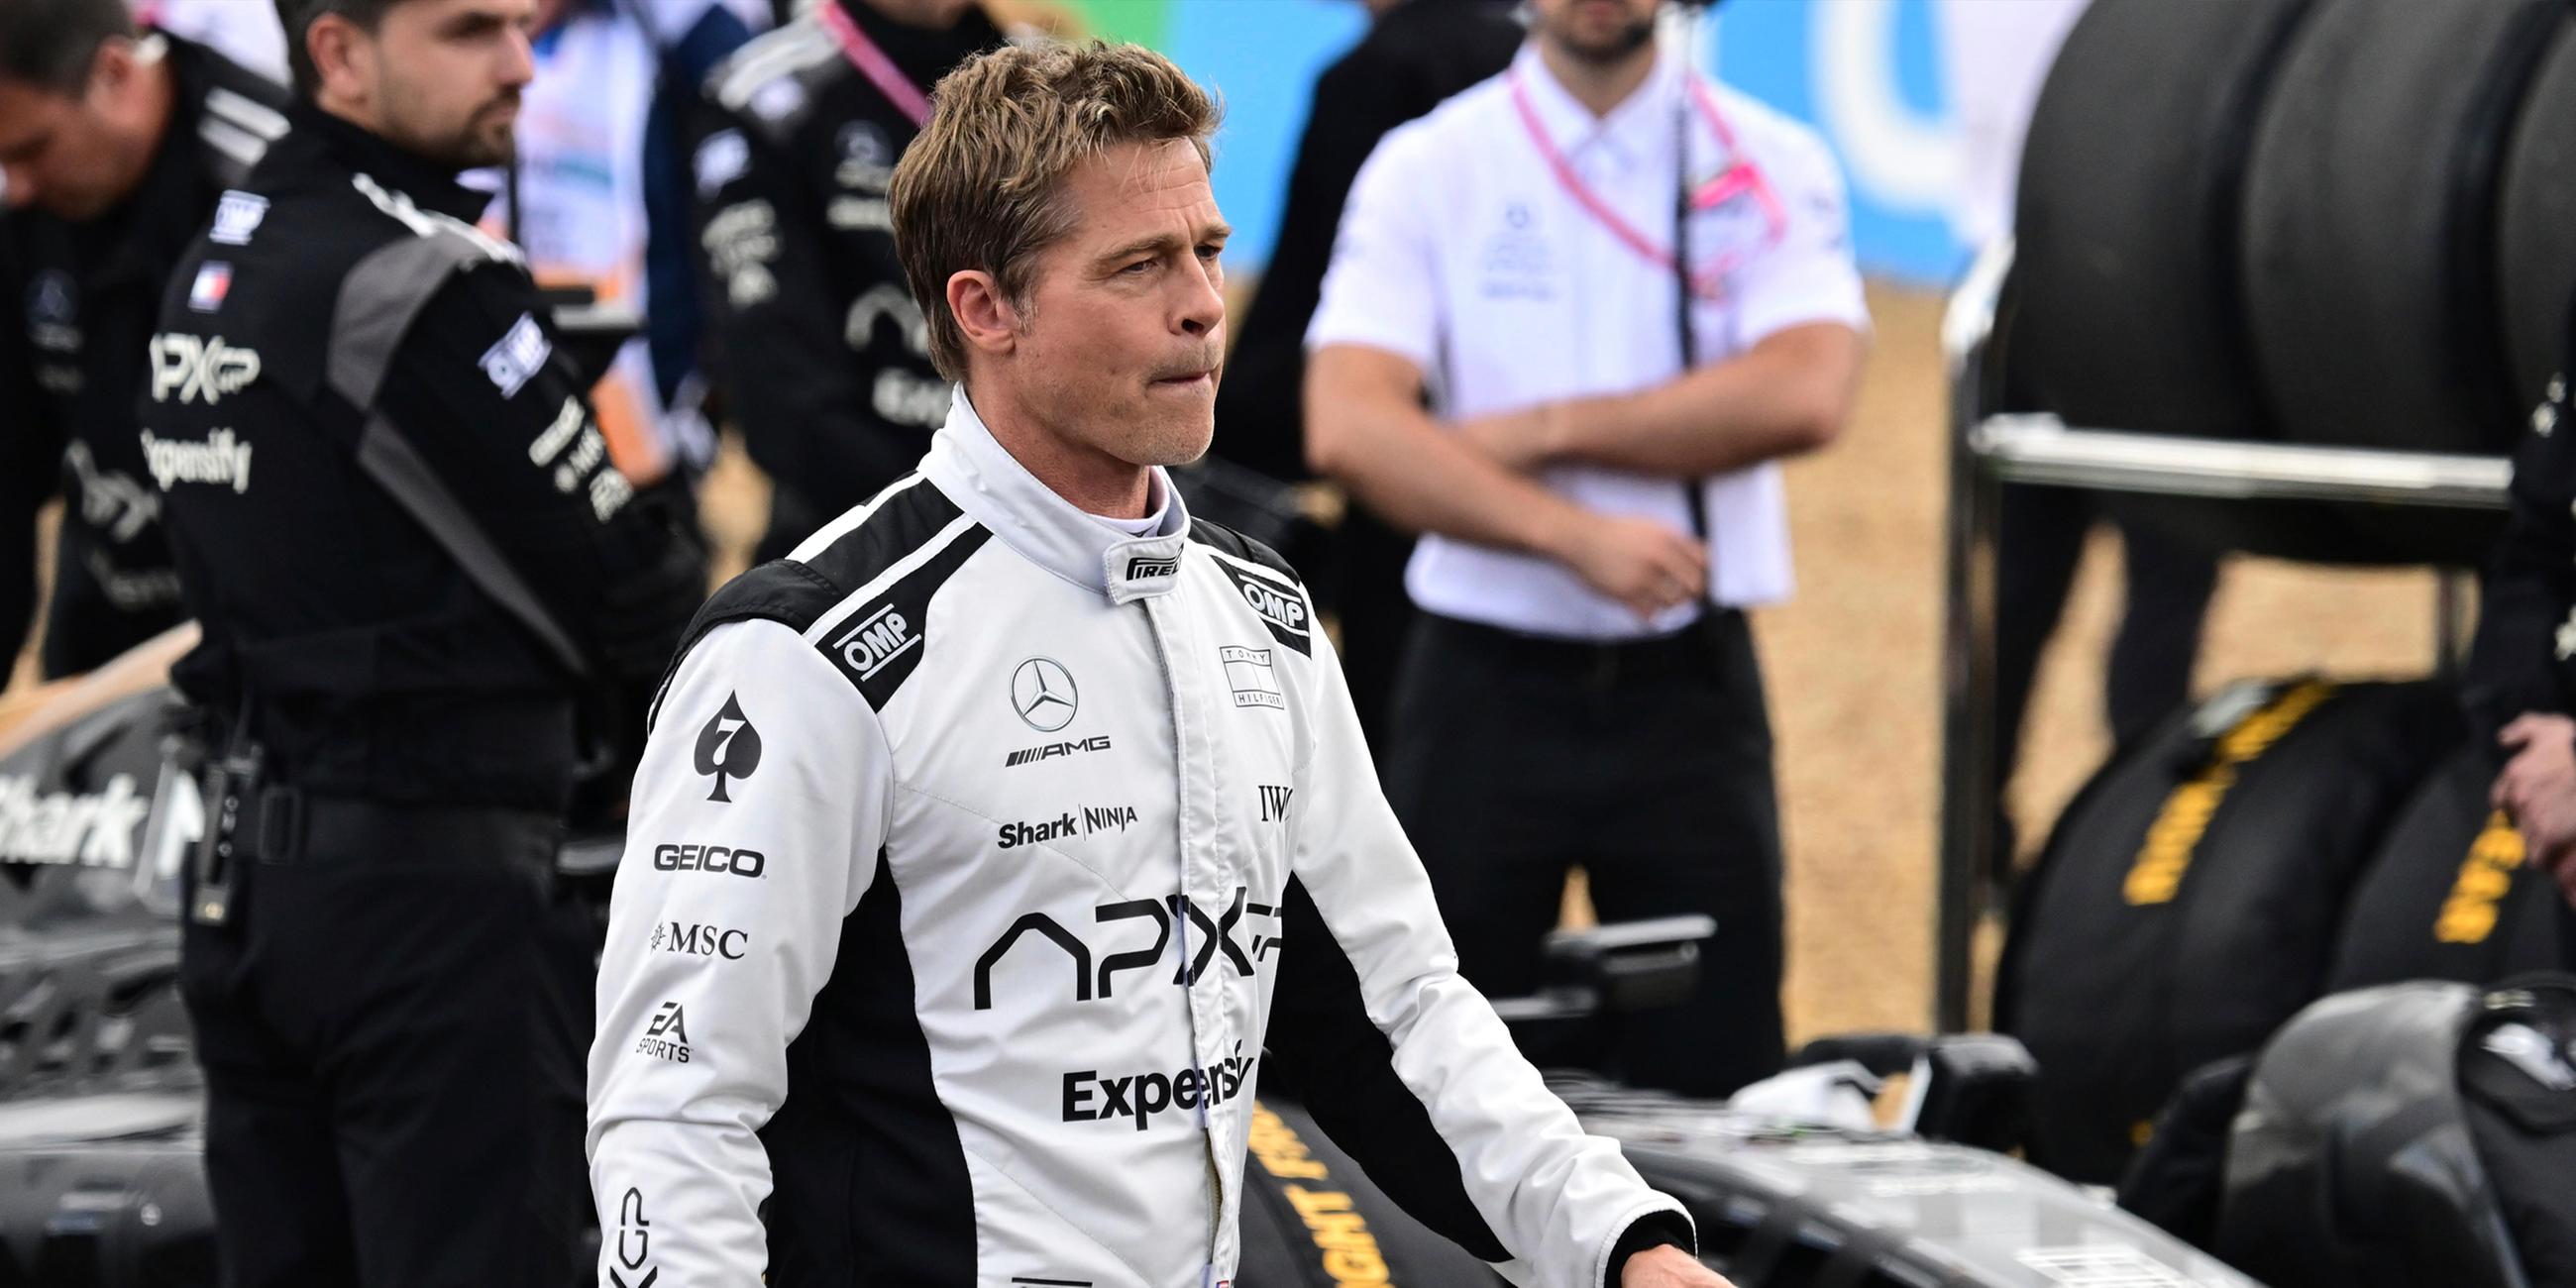 Brad Pitt vor den Britischen Formel 1 Gand Prix Rennen.